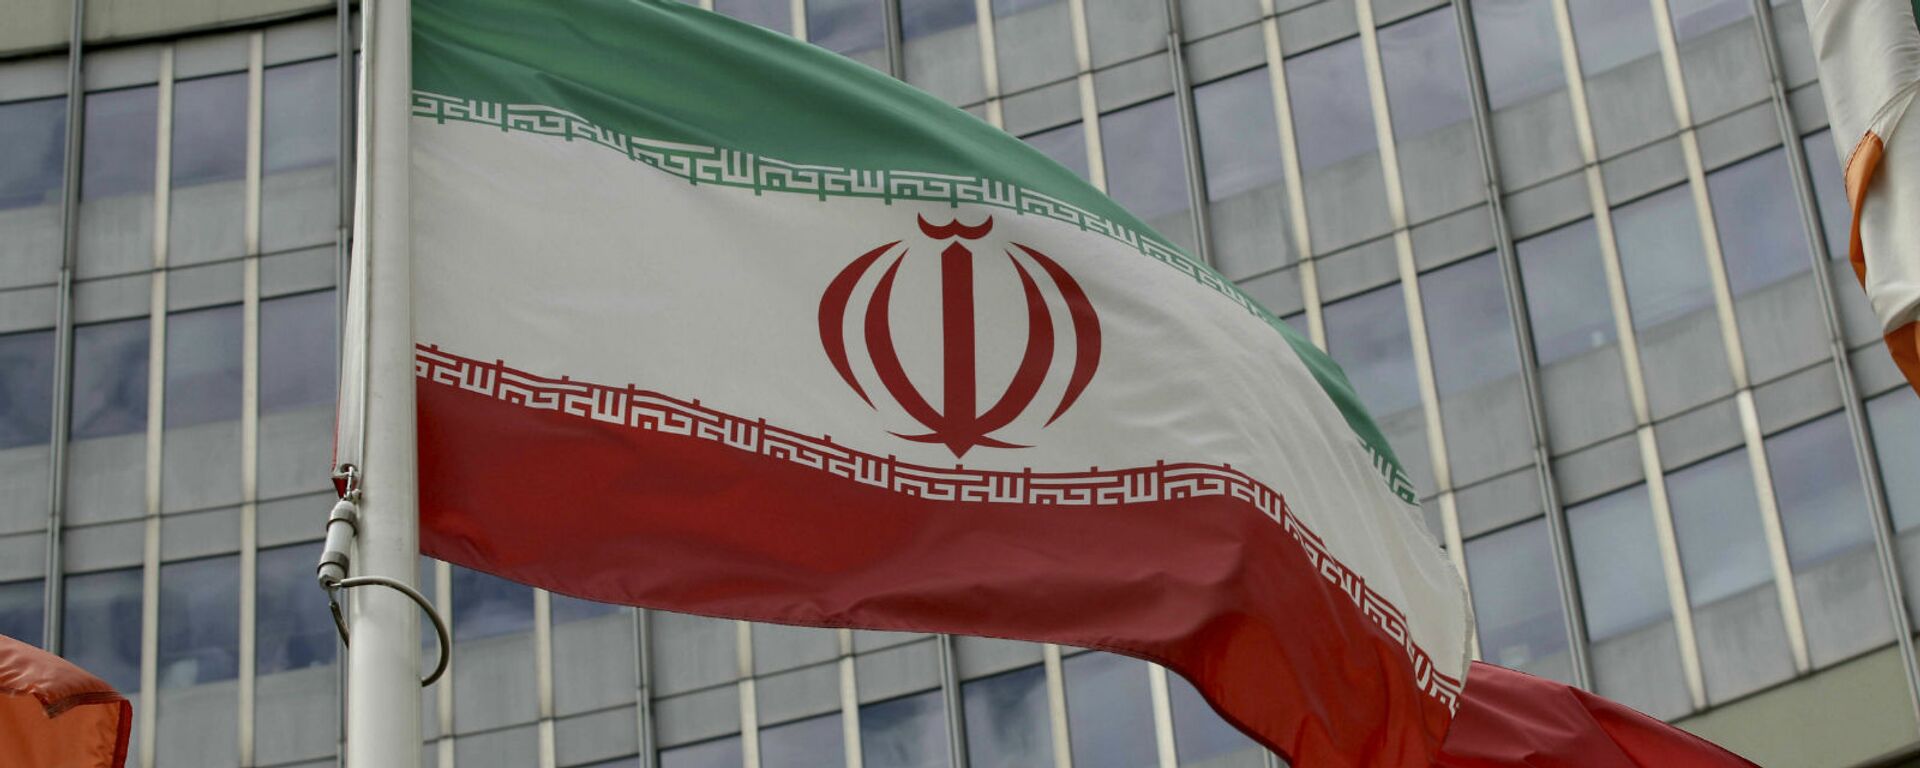 Иранский флаг развевается у здания ООН, в котором находится офис Международного агентства по атомной энергии МАГАТЭ (10 июля 2019). Вена - Sputnik Армения, 1920, 19.05.2021